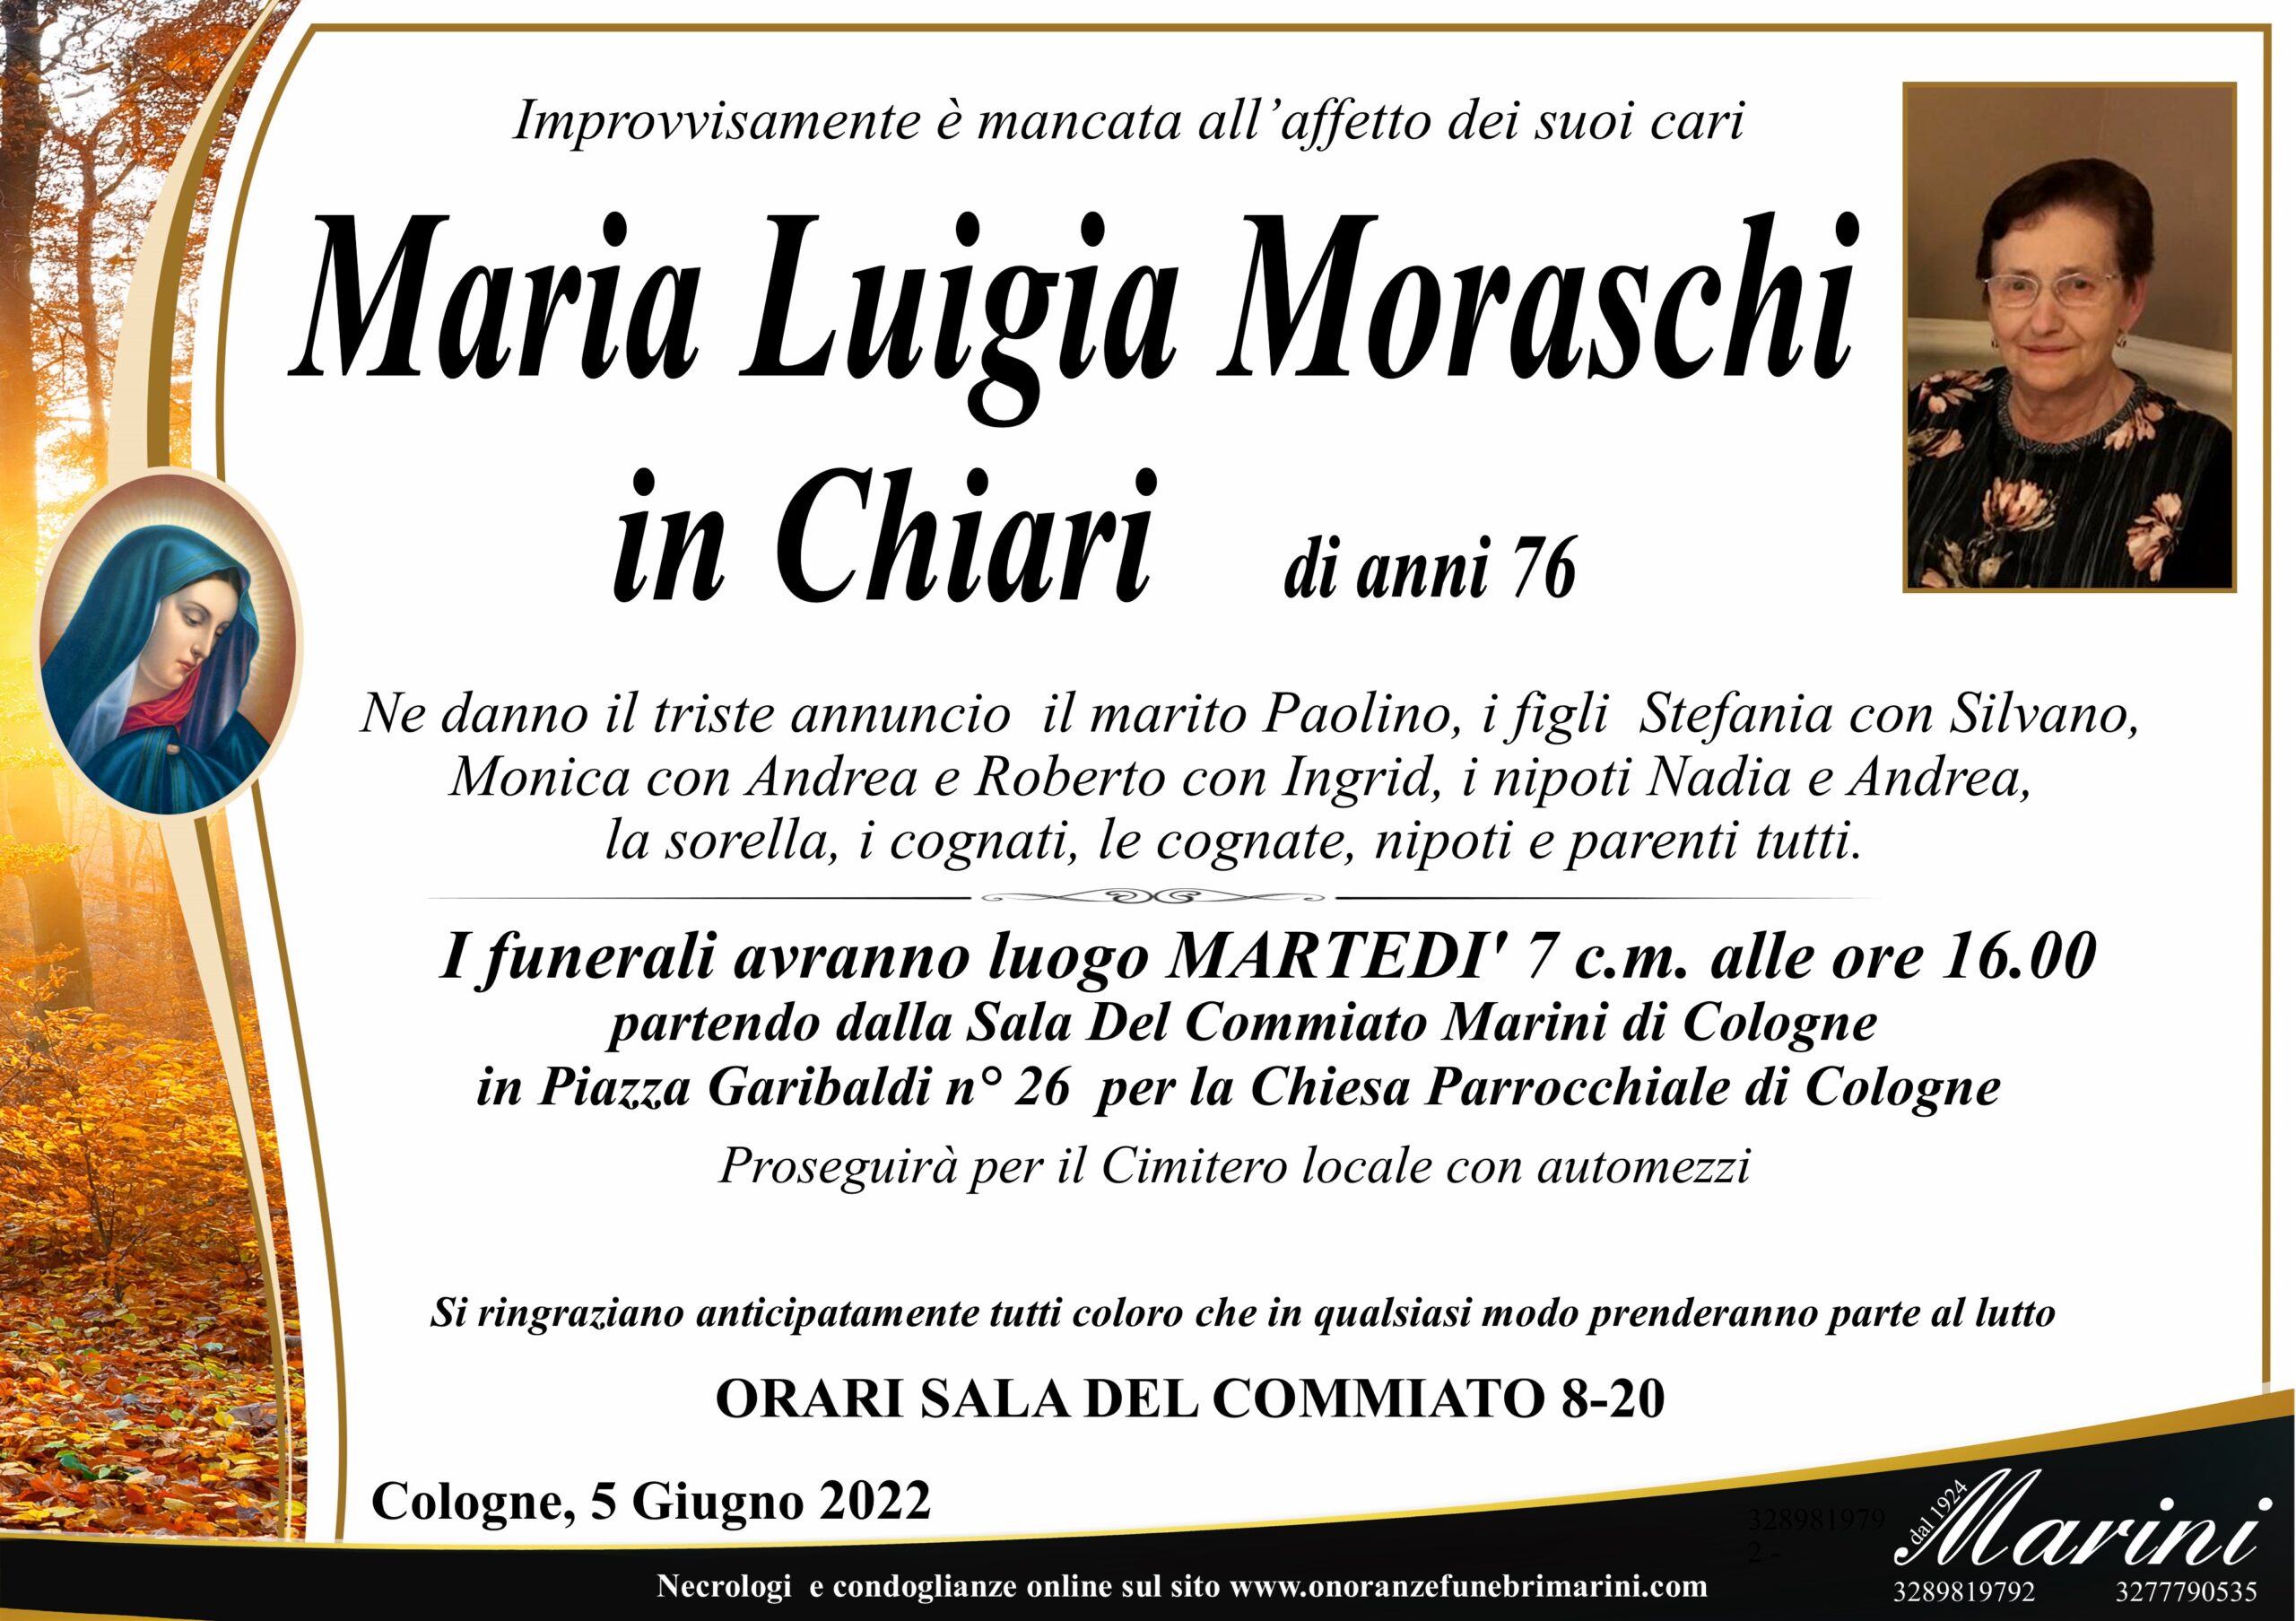 Maria Luigia Moraschi in Chiari